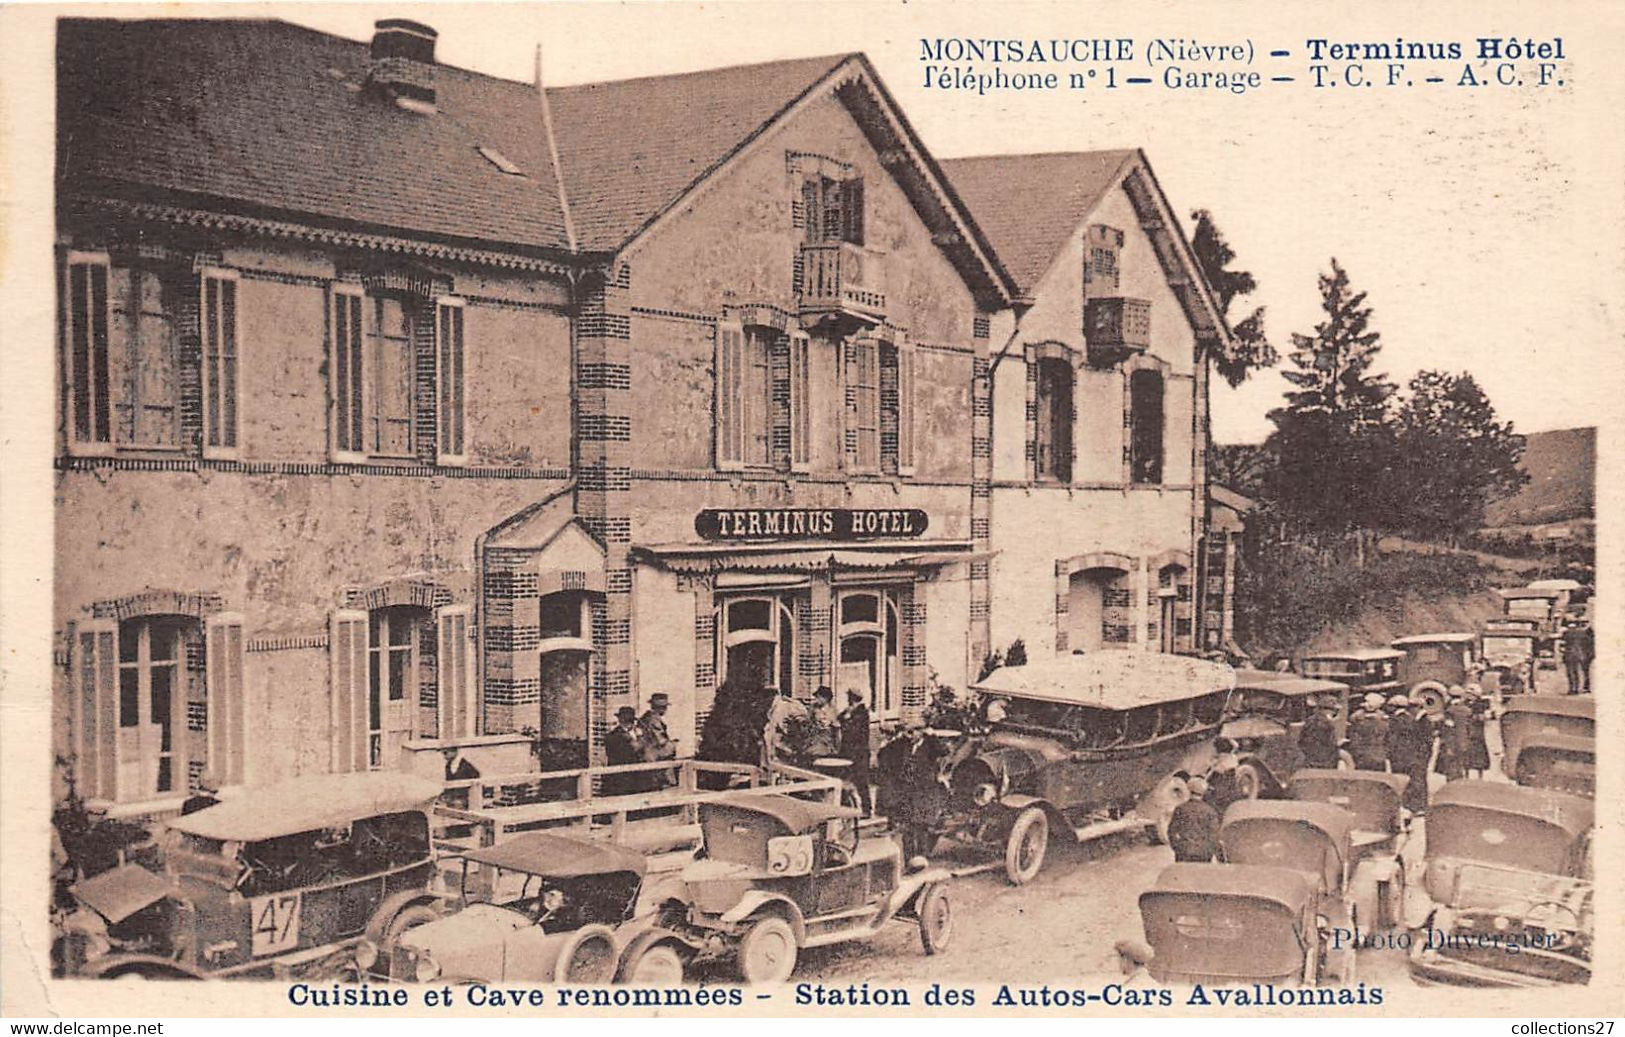 58-MONTSAUCHE-TERMINUS HÔTEL STATION DES AUTOS-CARS AVALLONNAIS - Montsauche Les Settons